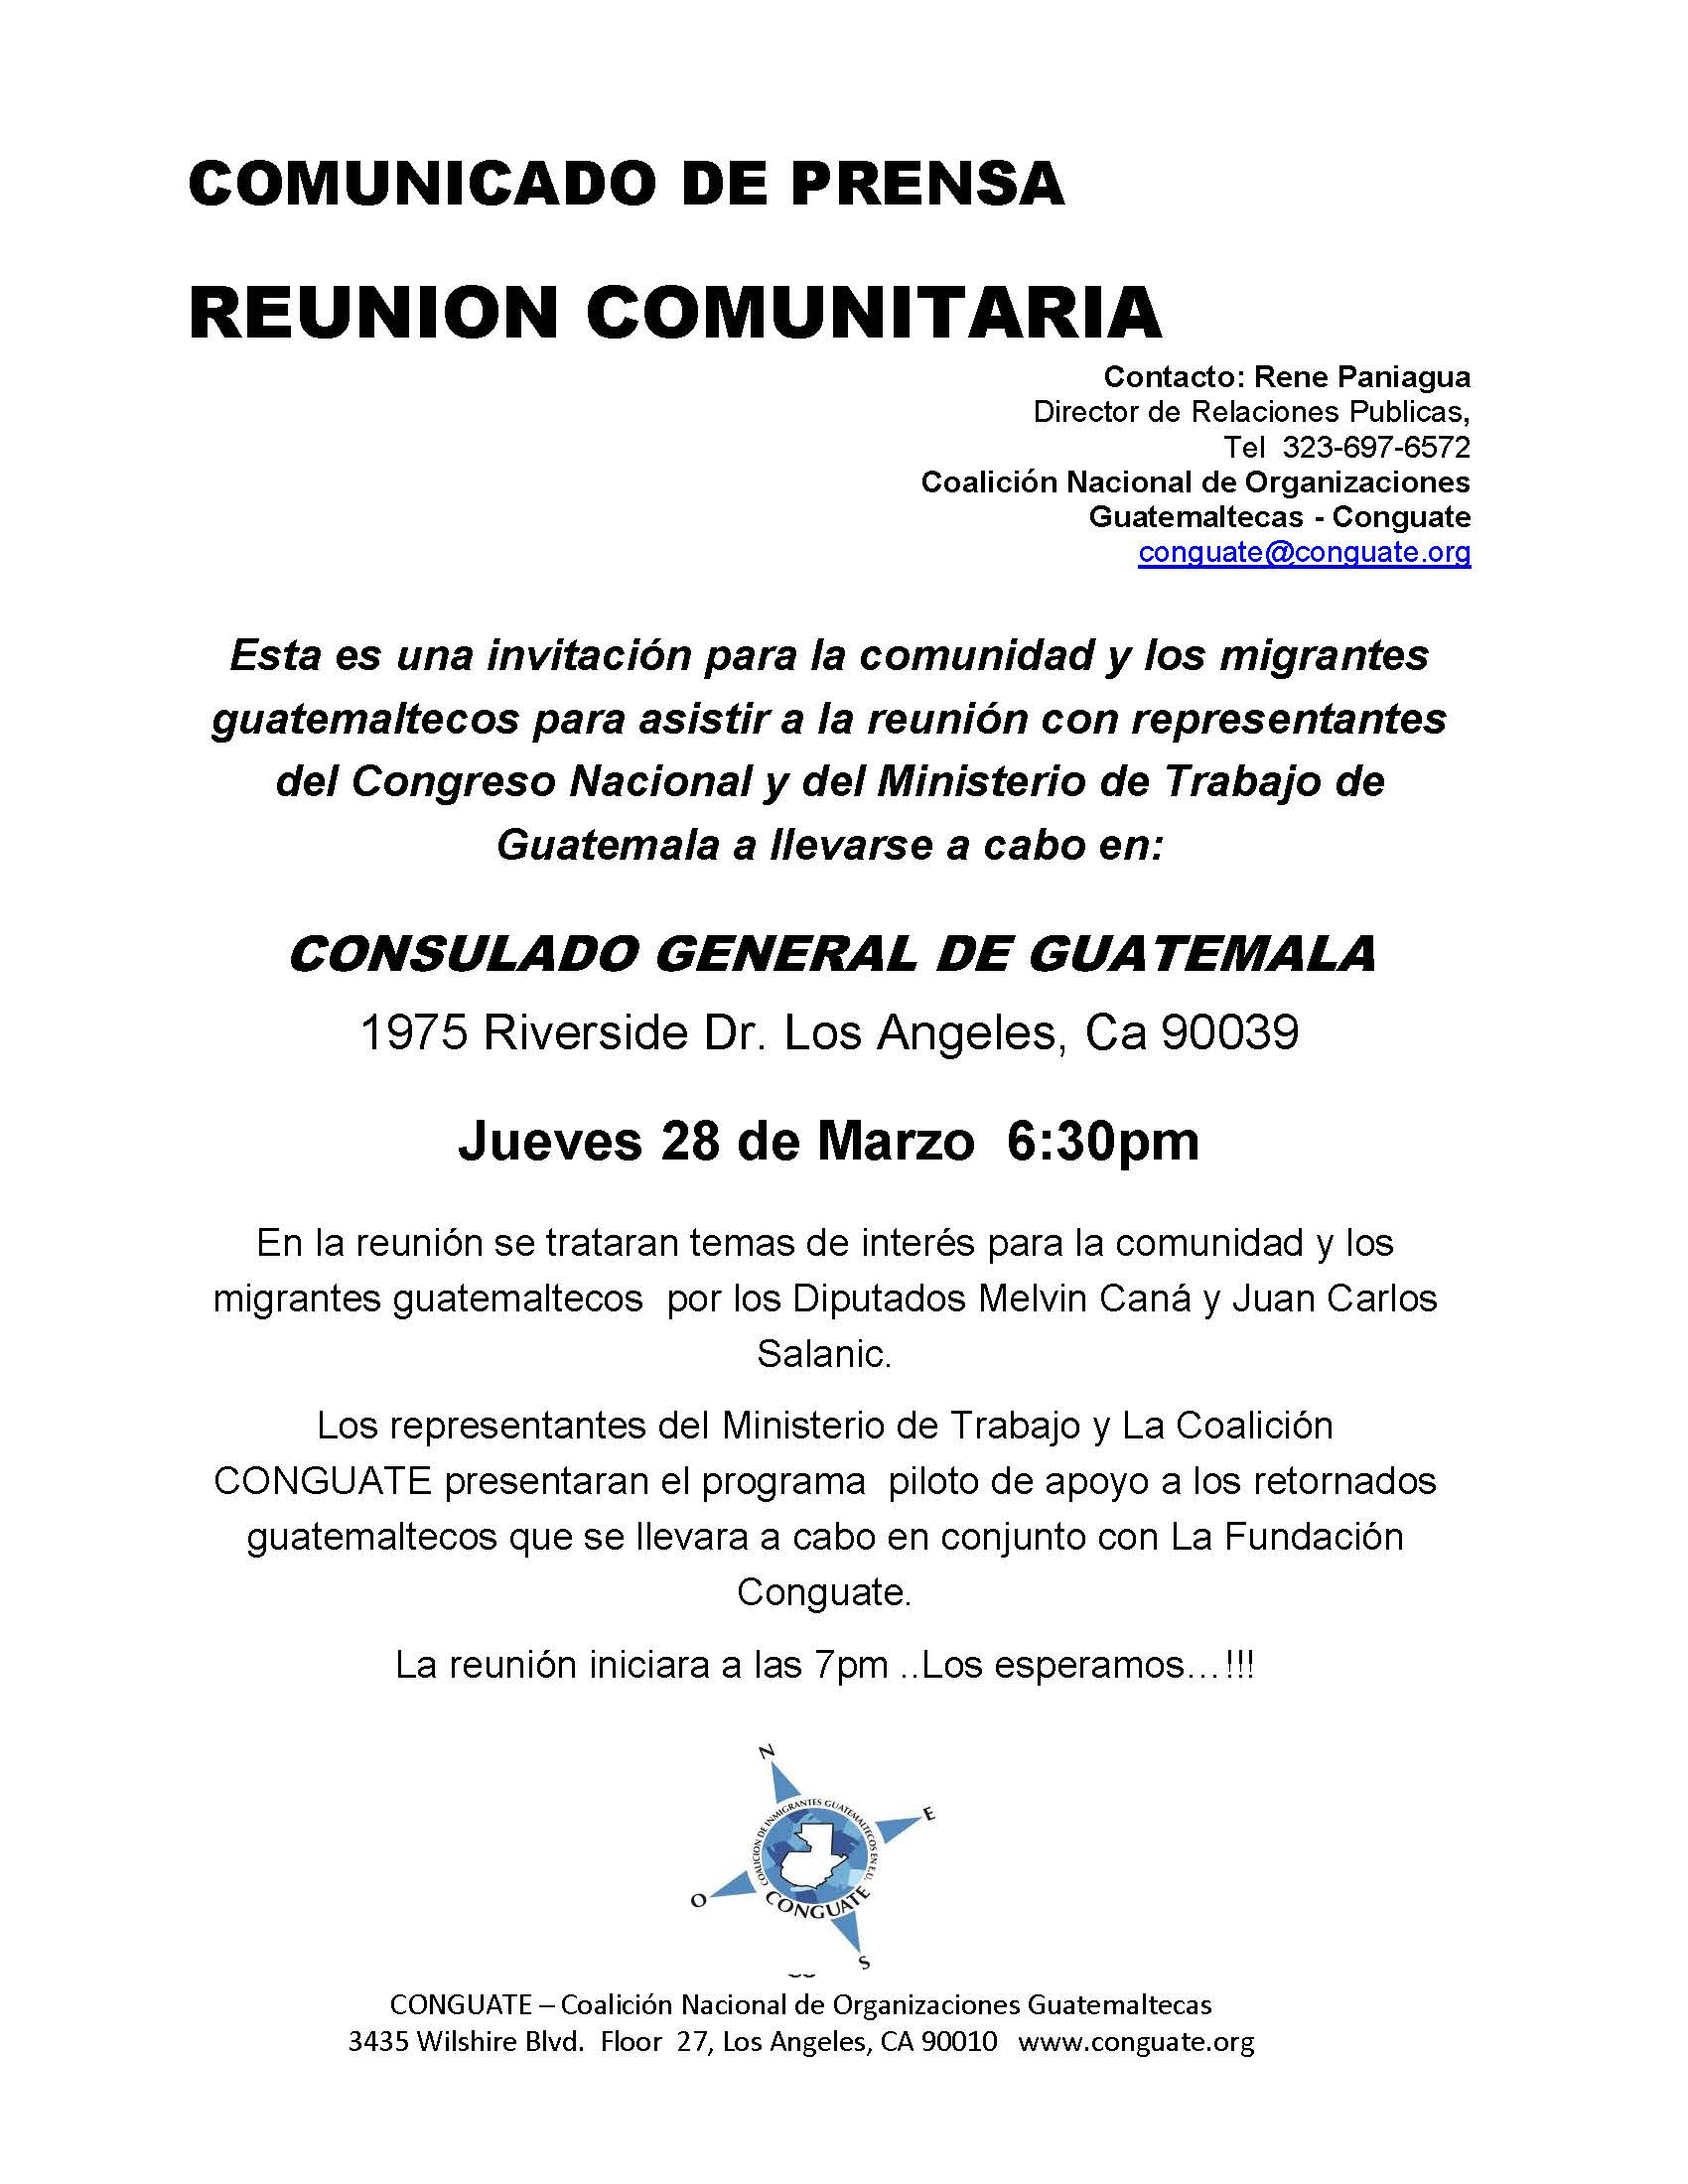 COMUNICADO COMUNITARIO DE REUNION EN EL CONSULADO MAR2019